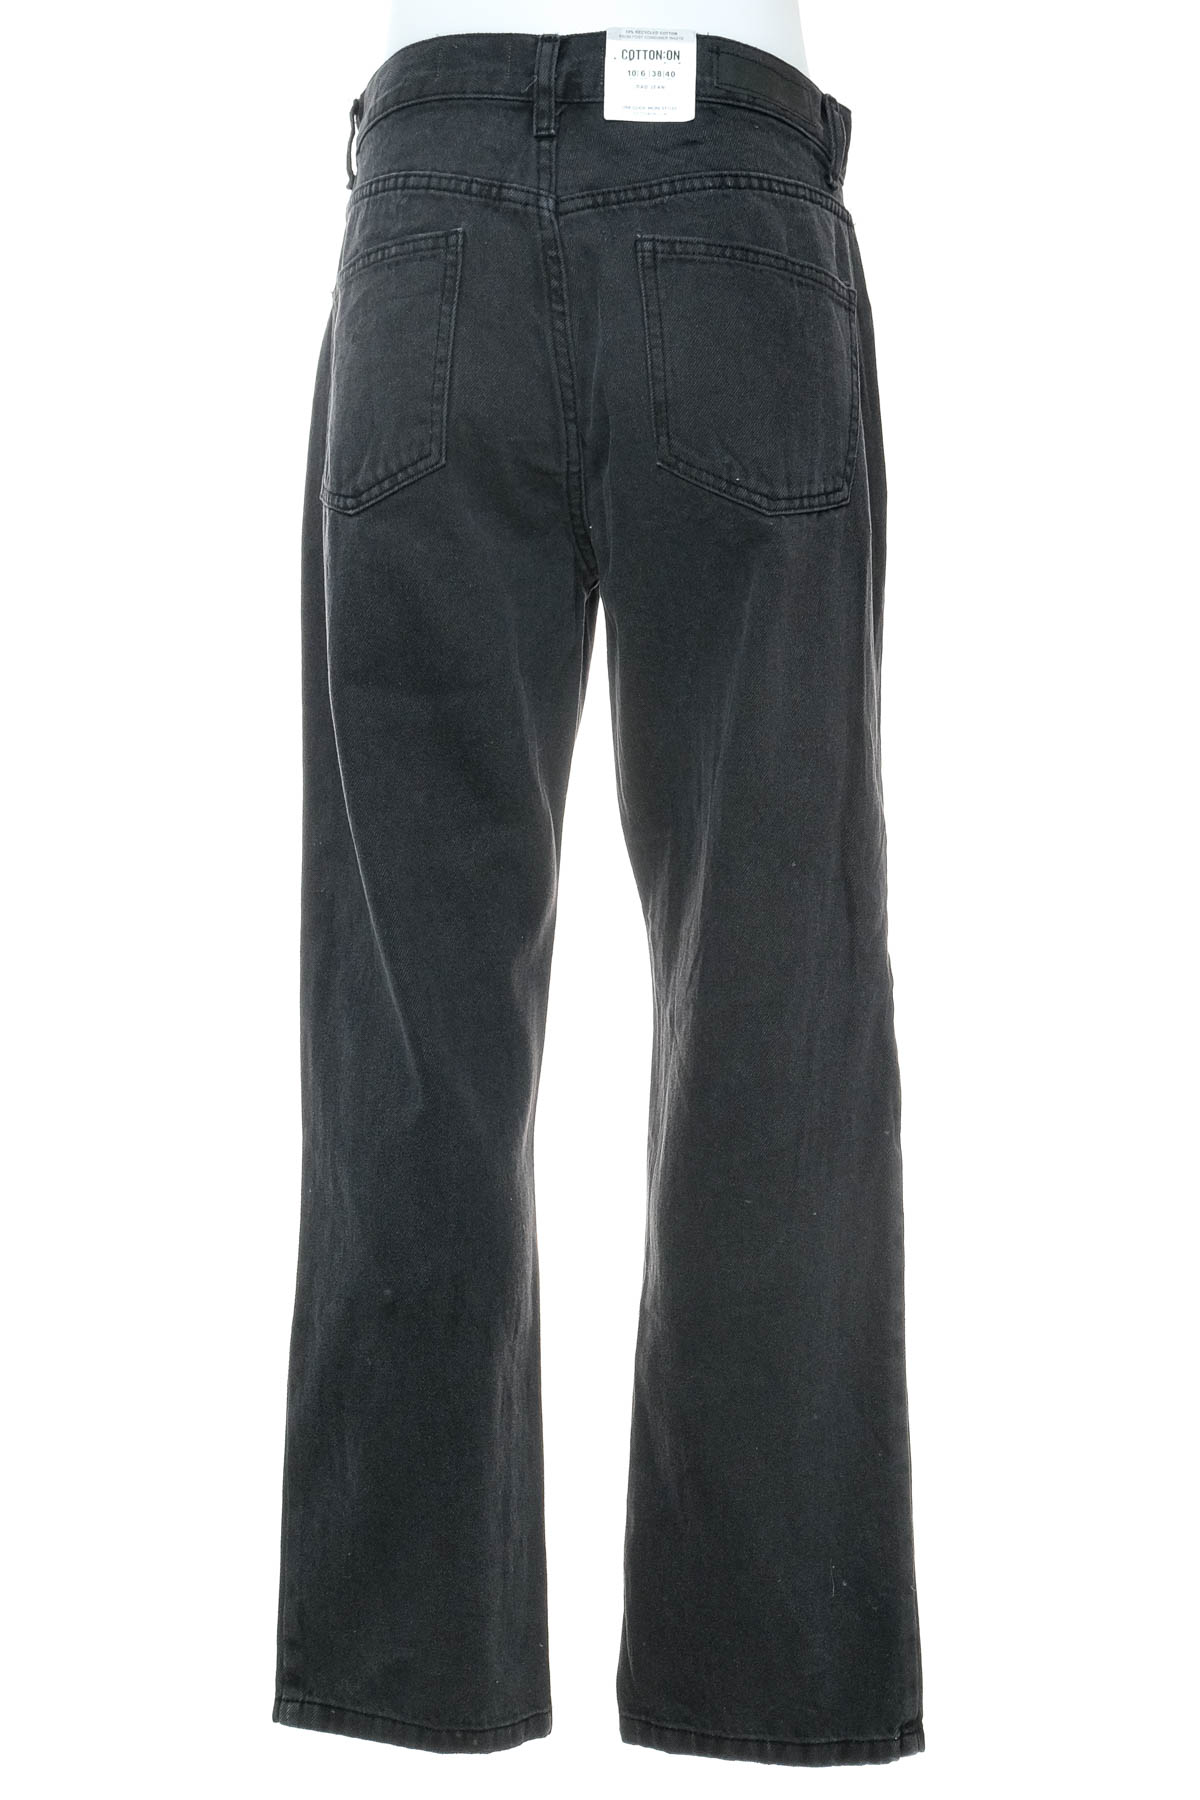 Jeans pentru bărbăți - COTTON:ON - 1